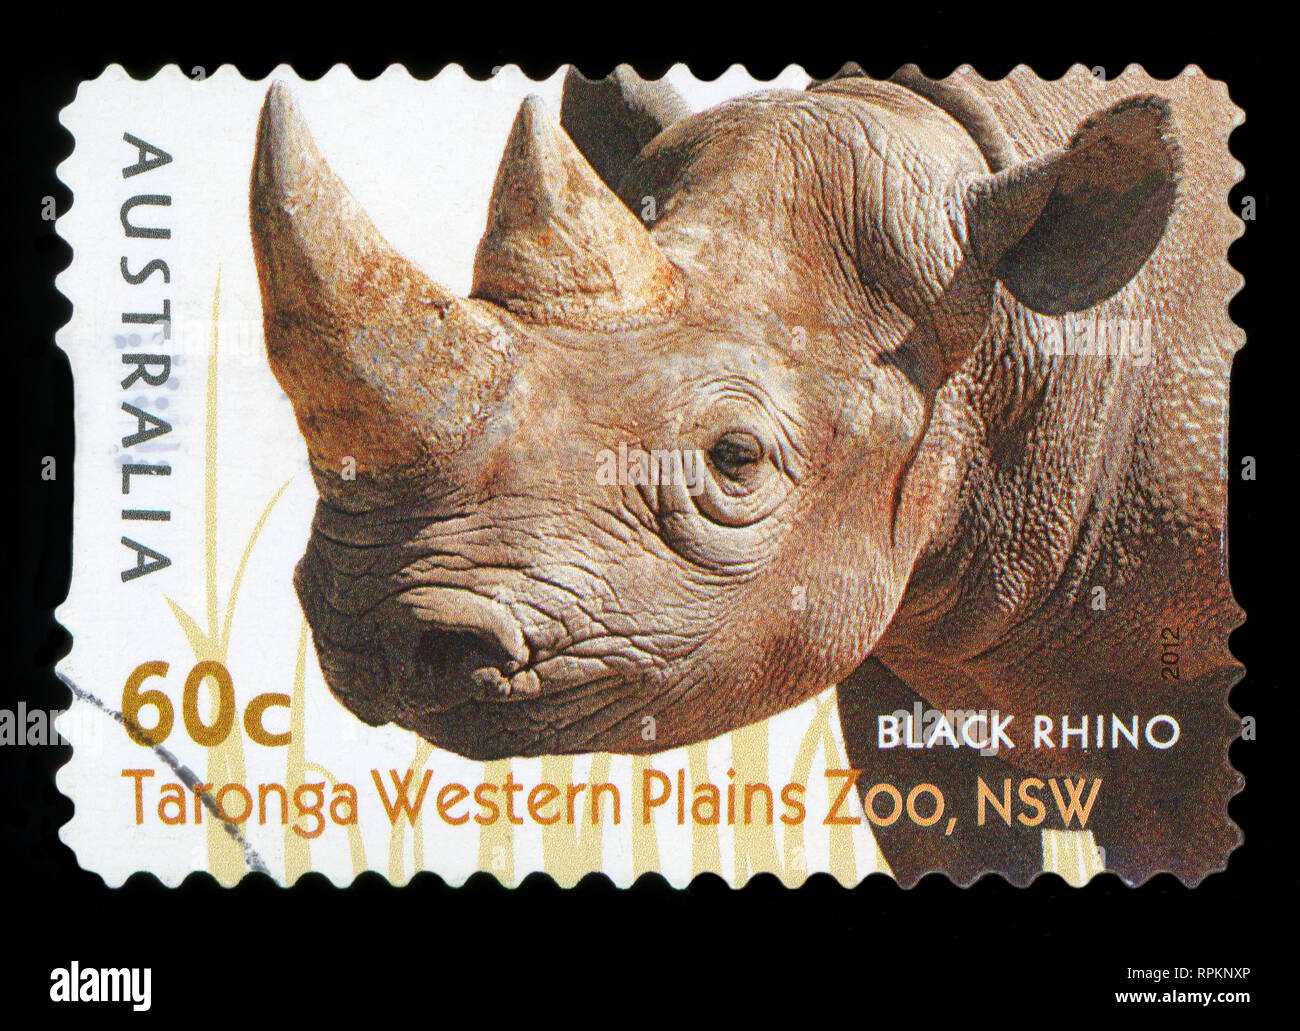 Australien - ca. 2012: einen Stempel in Australien gedruckten zeigt die Black Rhino von taronga Western Plains Zoo, NSW, Serie, ca. 2012. Stockfoto